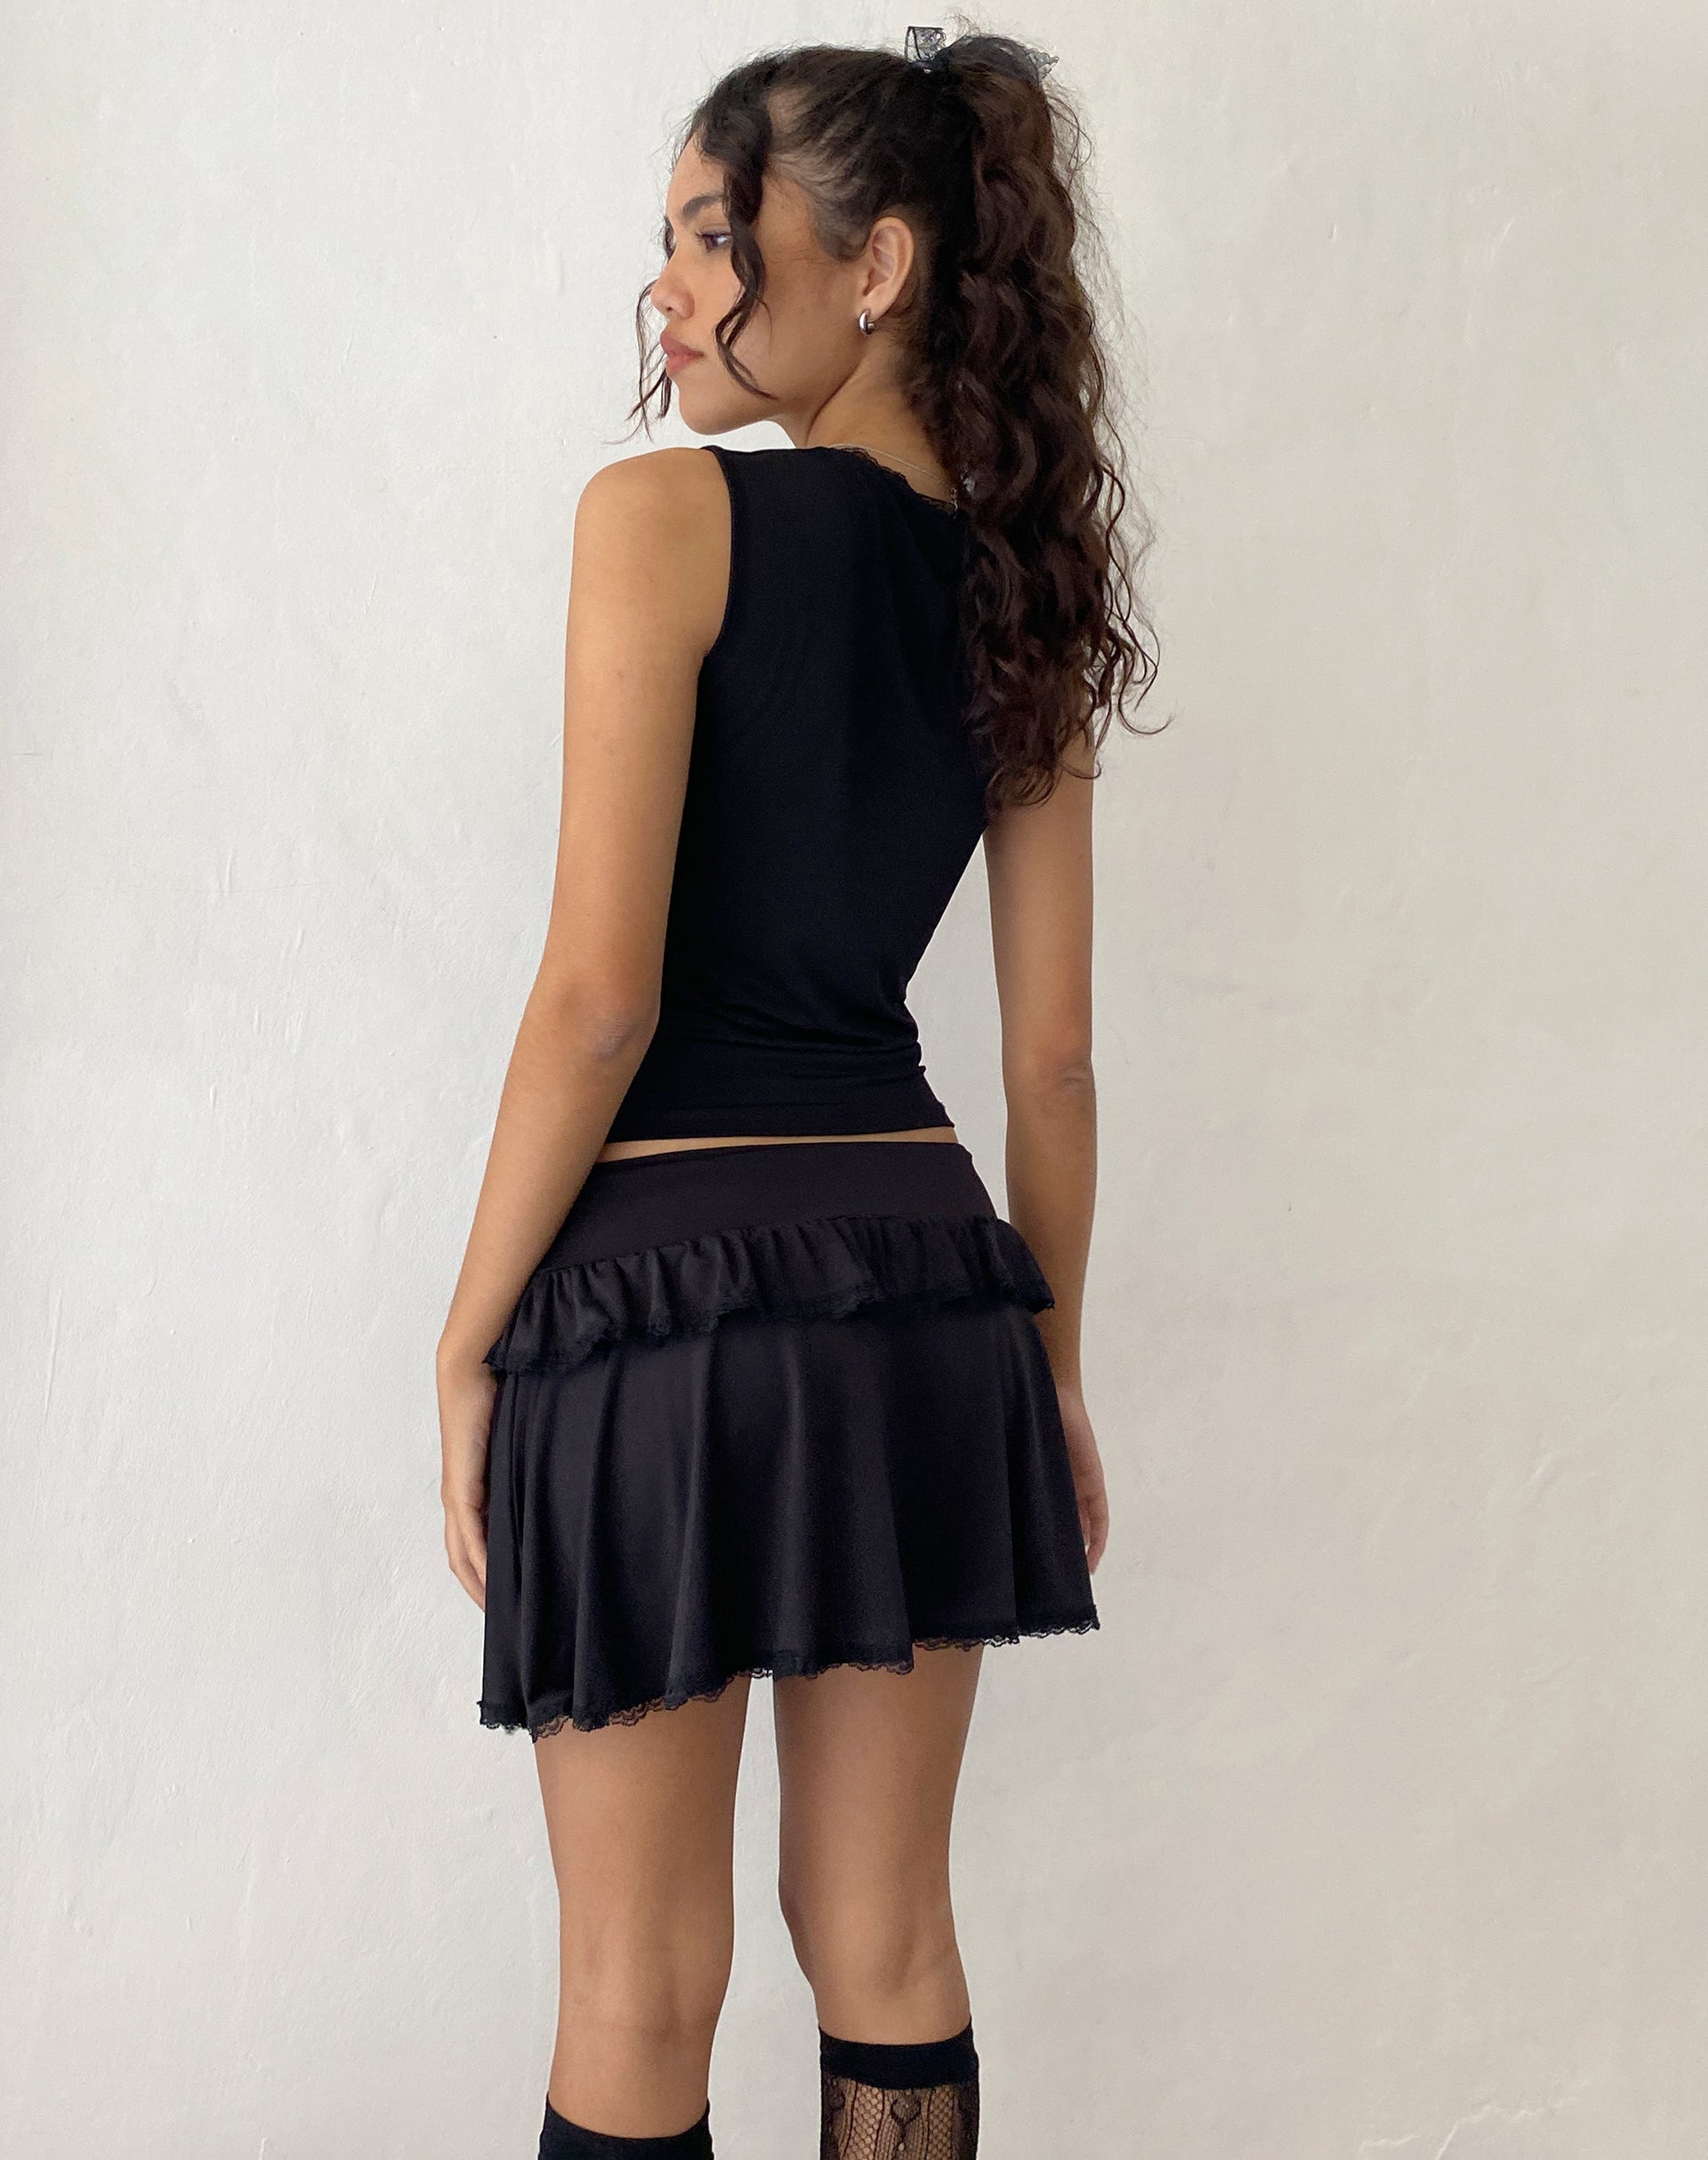 Imagen de Addalyn Minifalda de encaje en negro